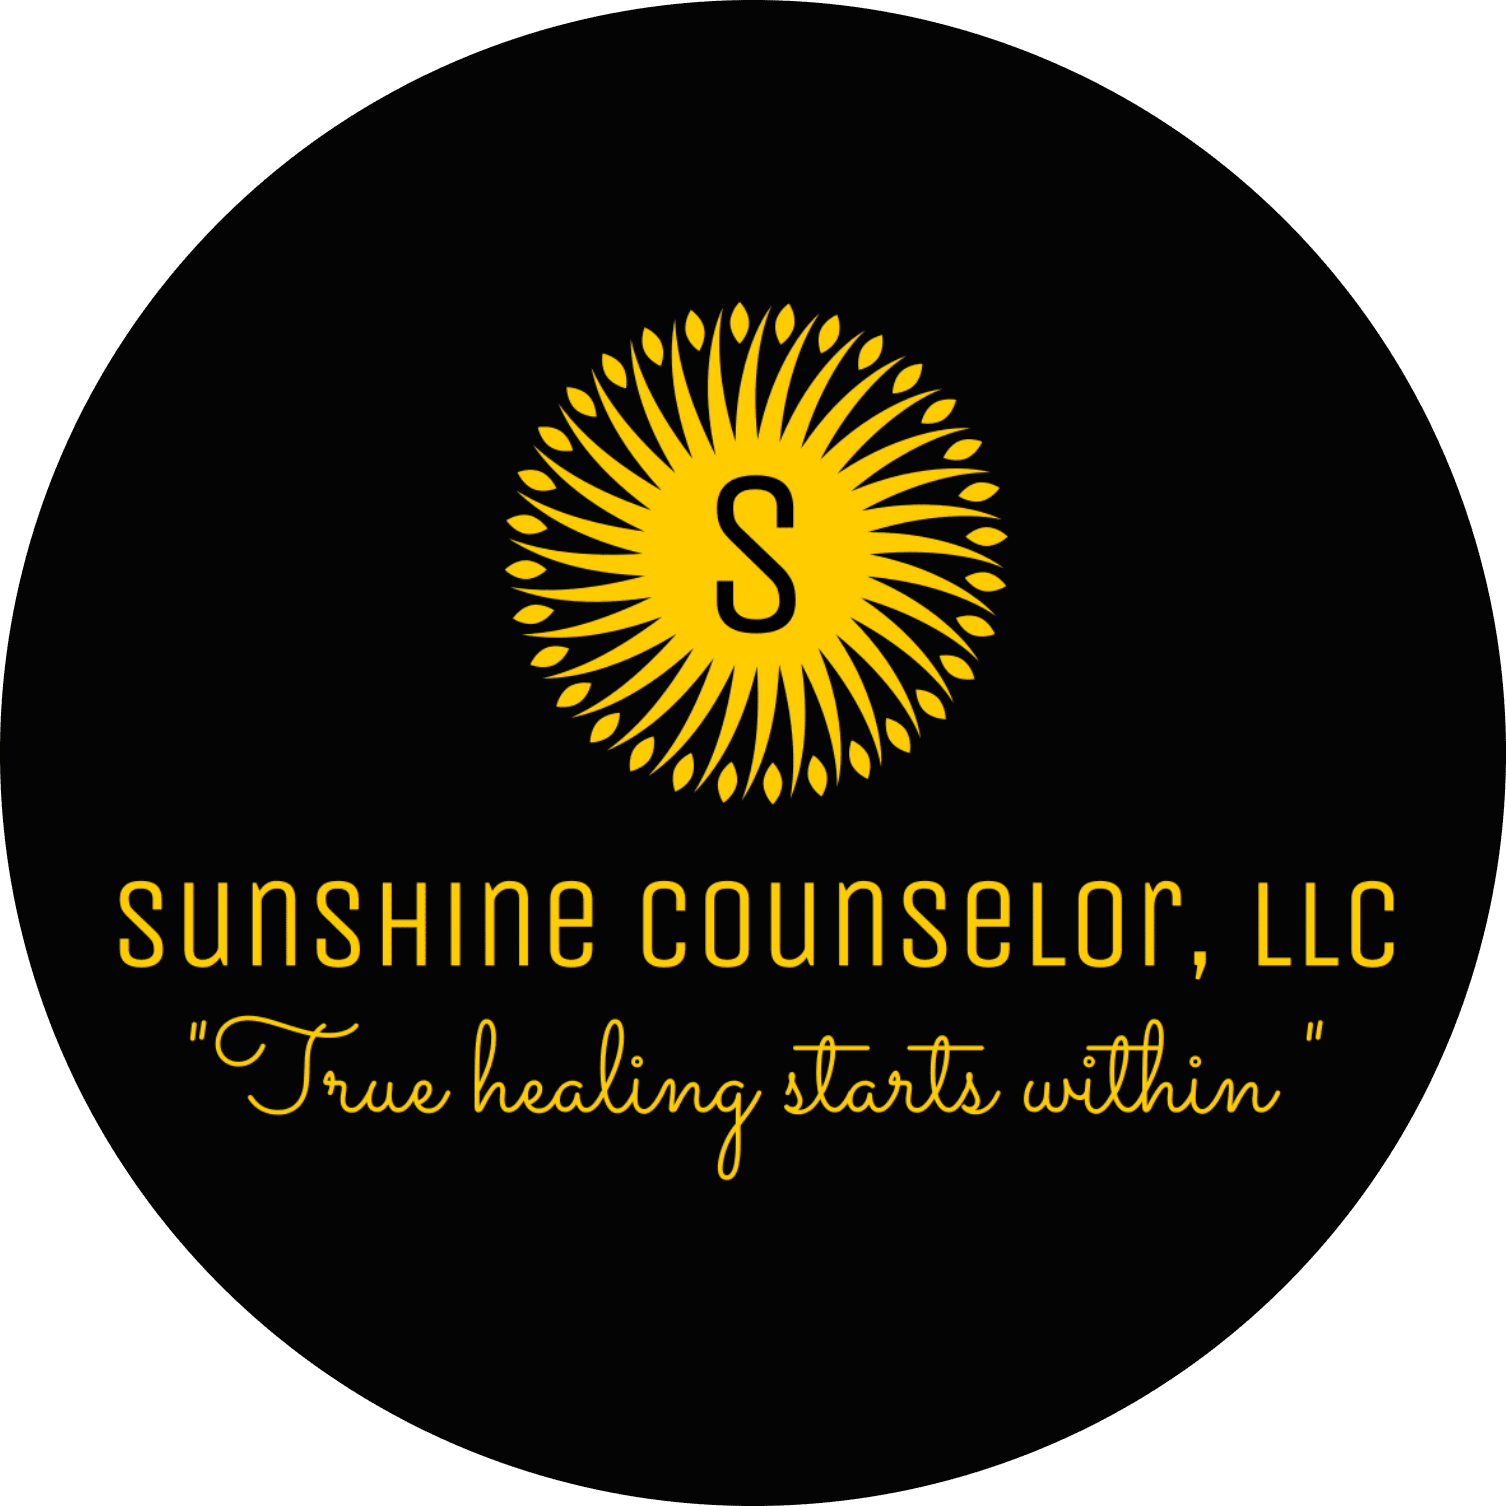 Sunshine Counselor, LLC